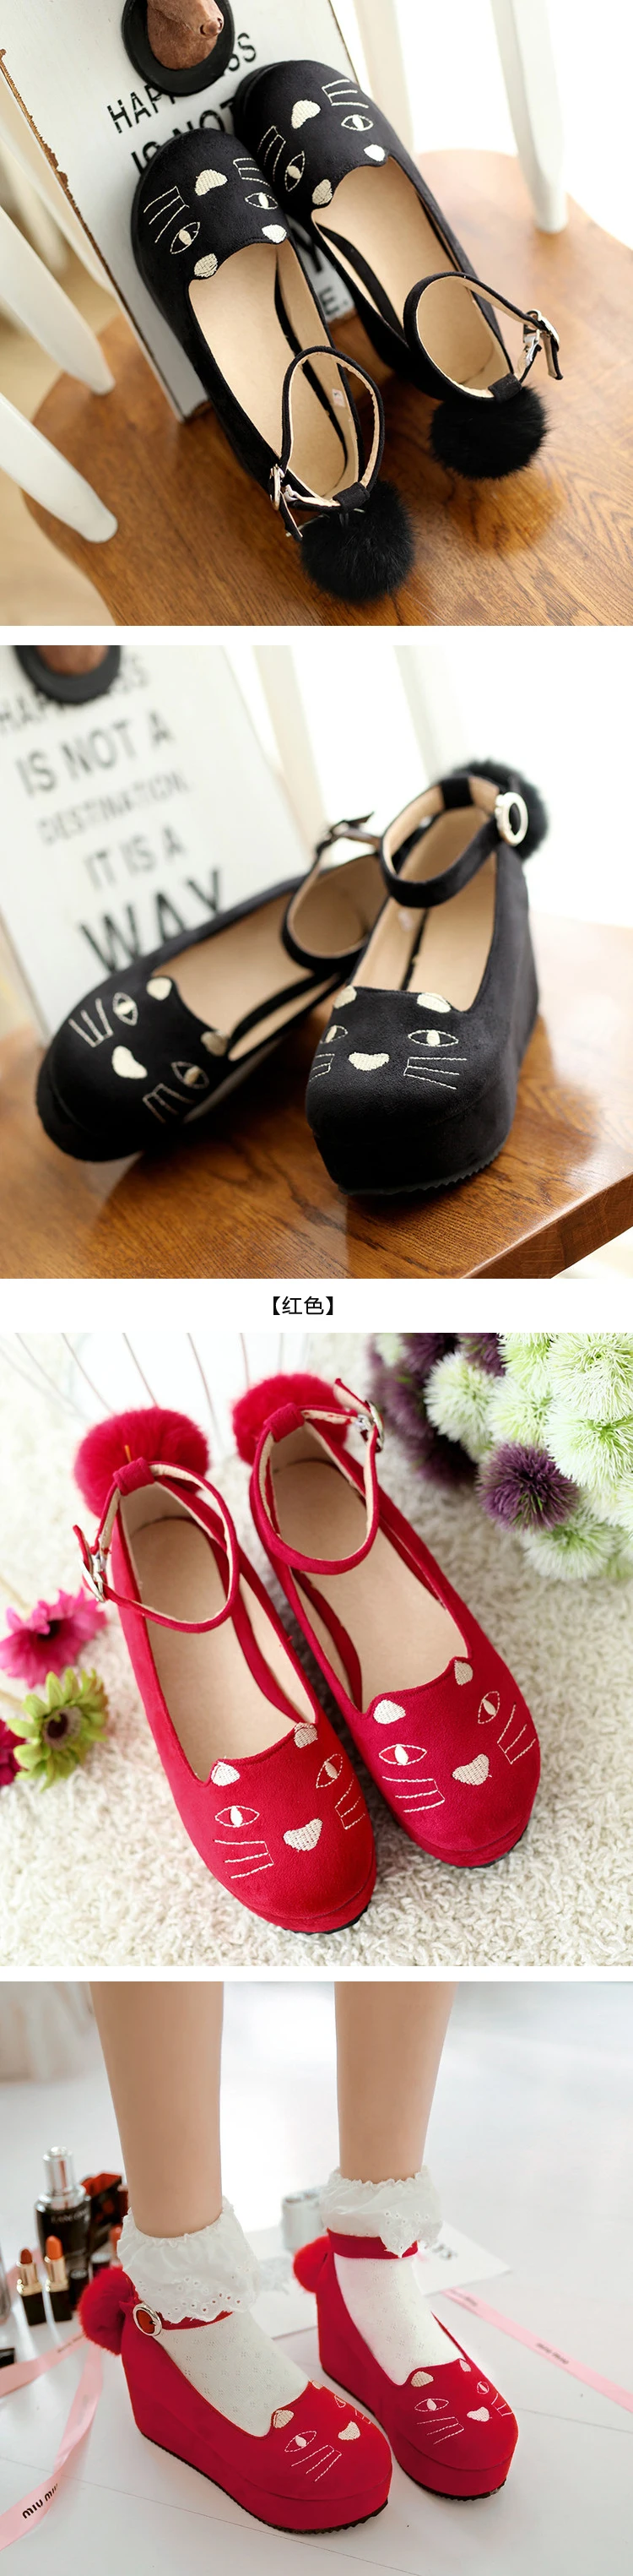 Японский стиль Лолиты обувь прекрасный кот Slipsole обувь на плоской подошве A